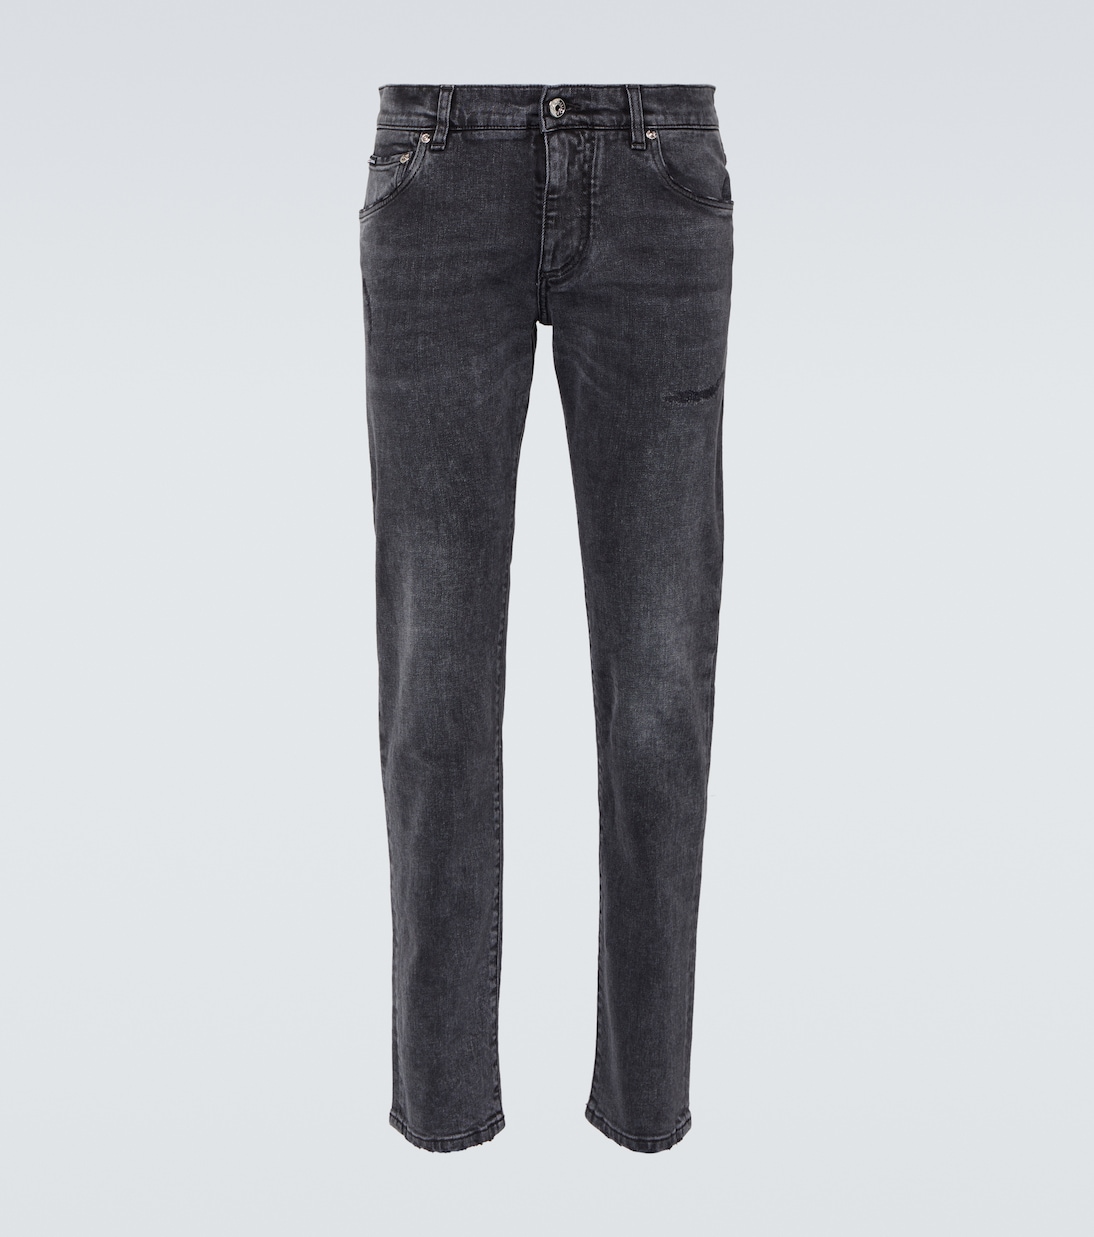 Узкие джинсы с низкой посадкой Dolce&Gabbana, серый узкие джинсы с низкой посадкой серый